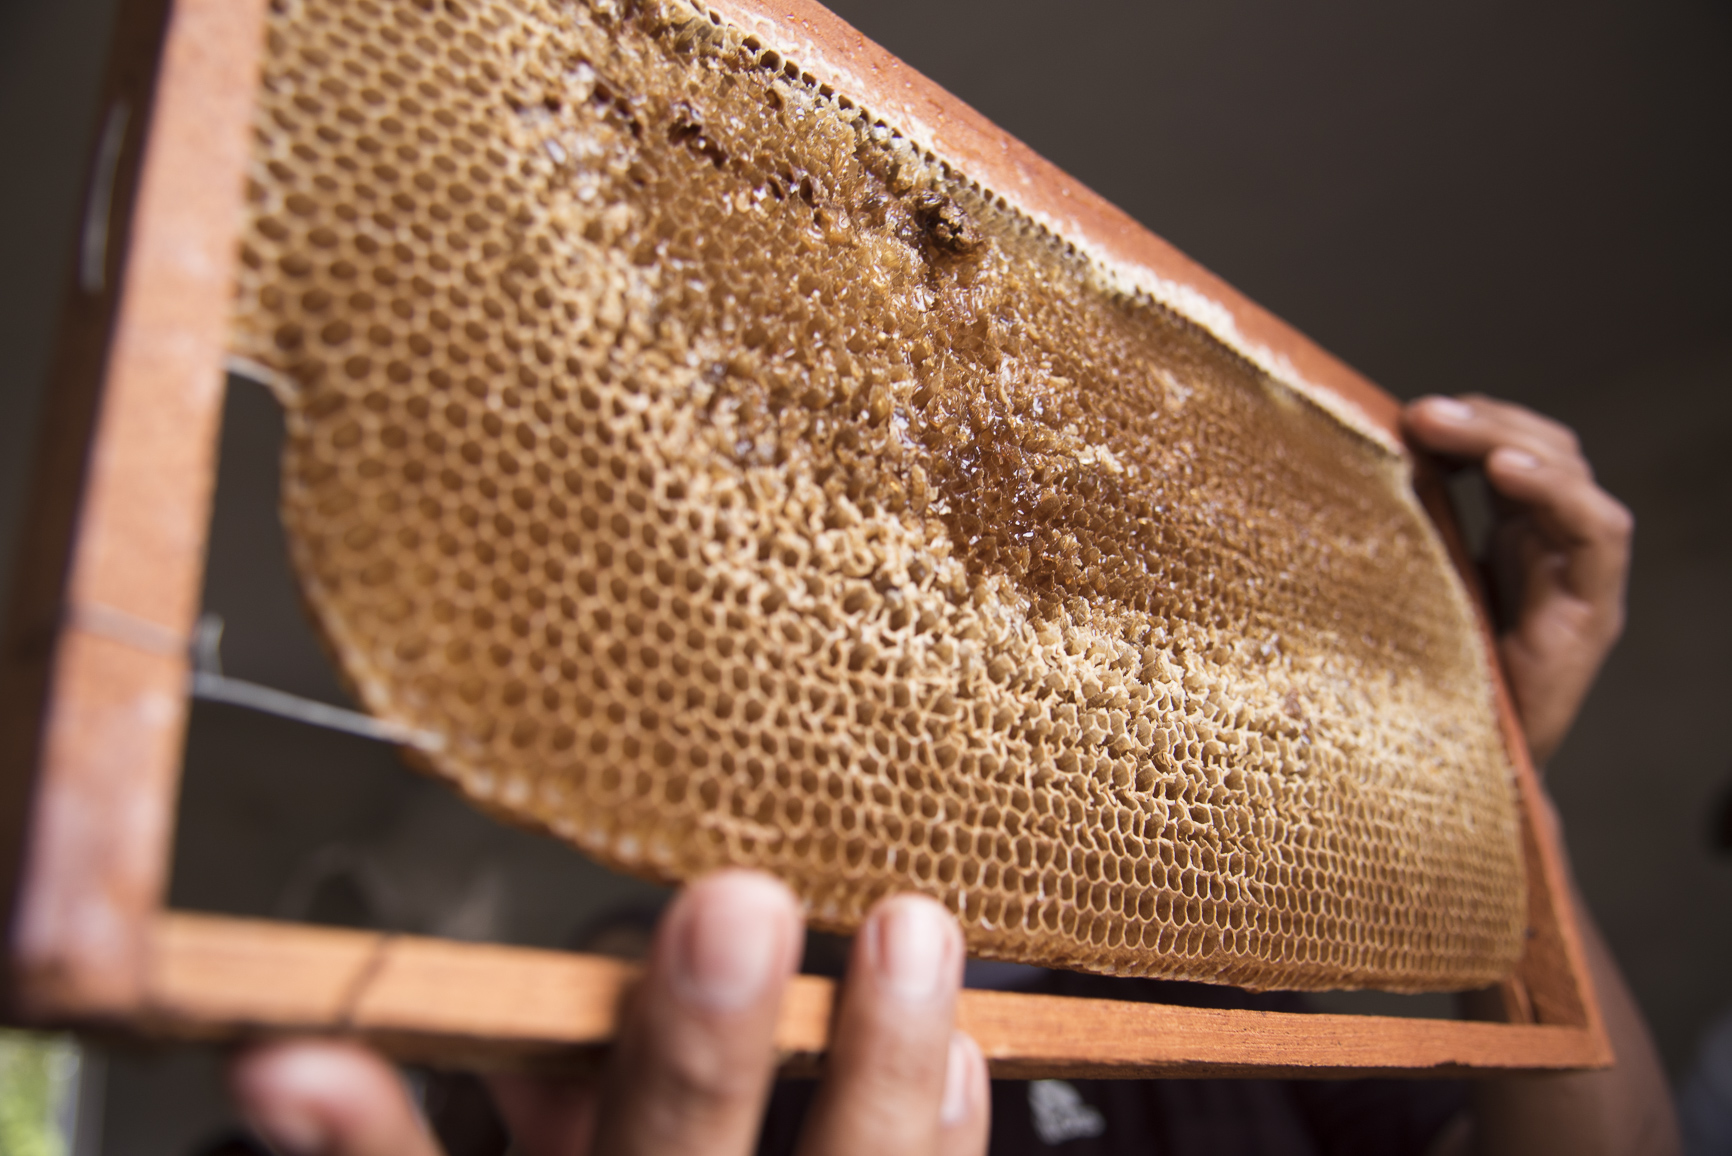 La producción de miel en el ejido es una de las actividades productivas en las que están invirtiendo mucho esfuerzo con el objeto de consolidarla como una empresa propia e independiente en un futuro.